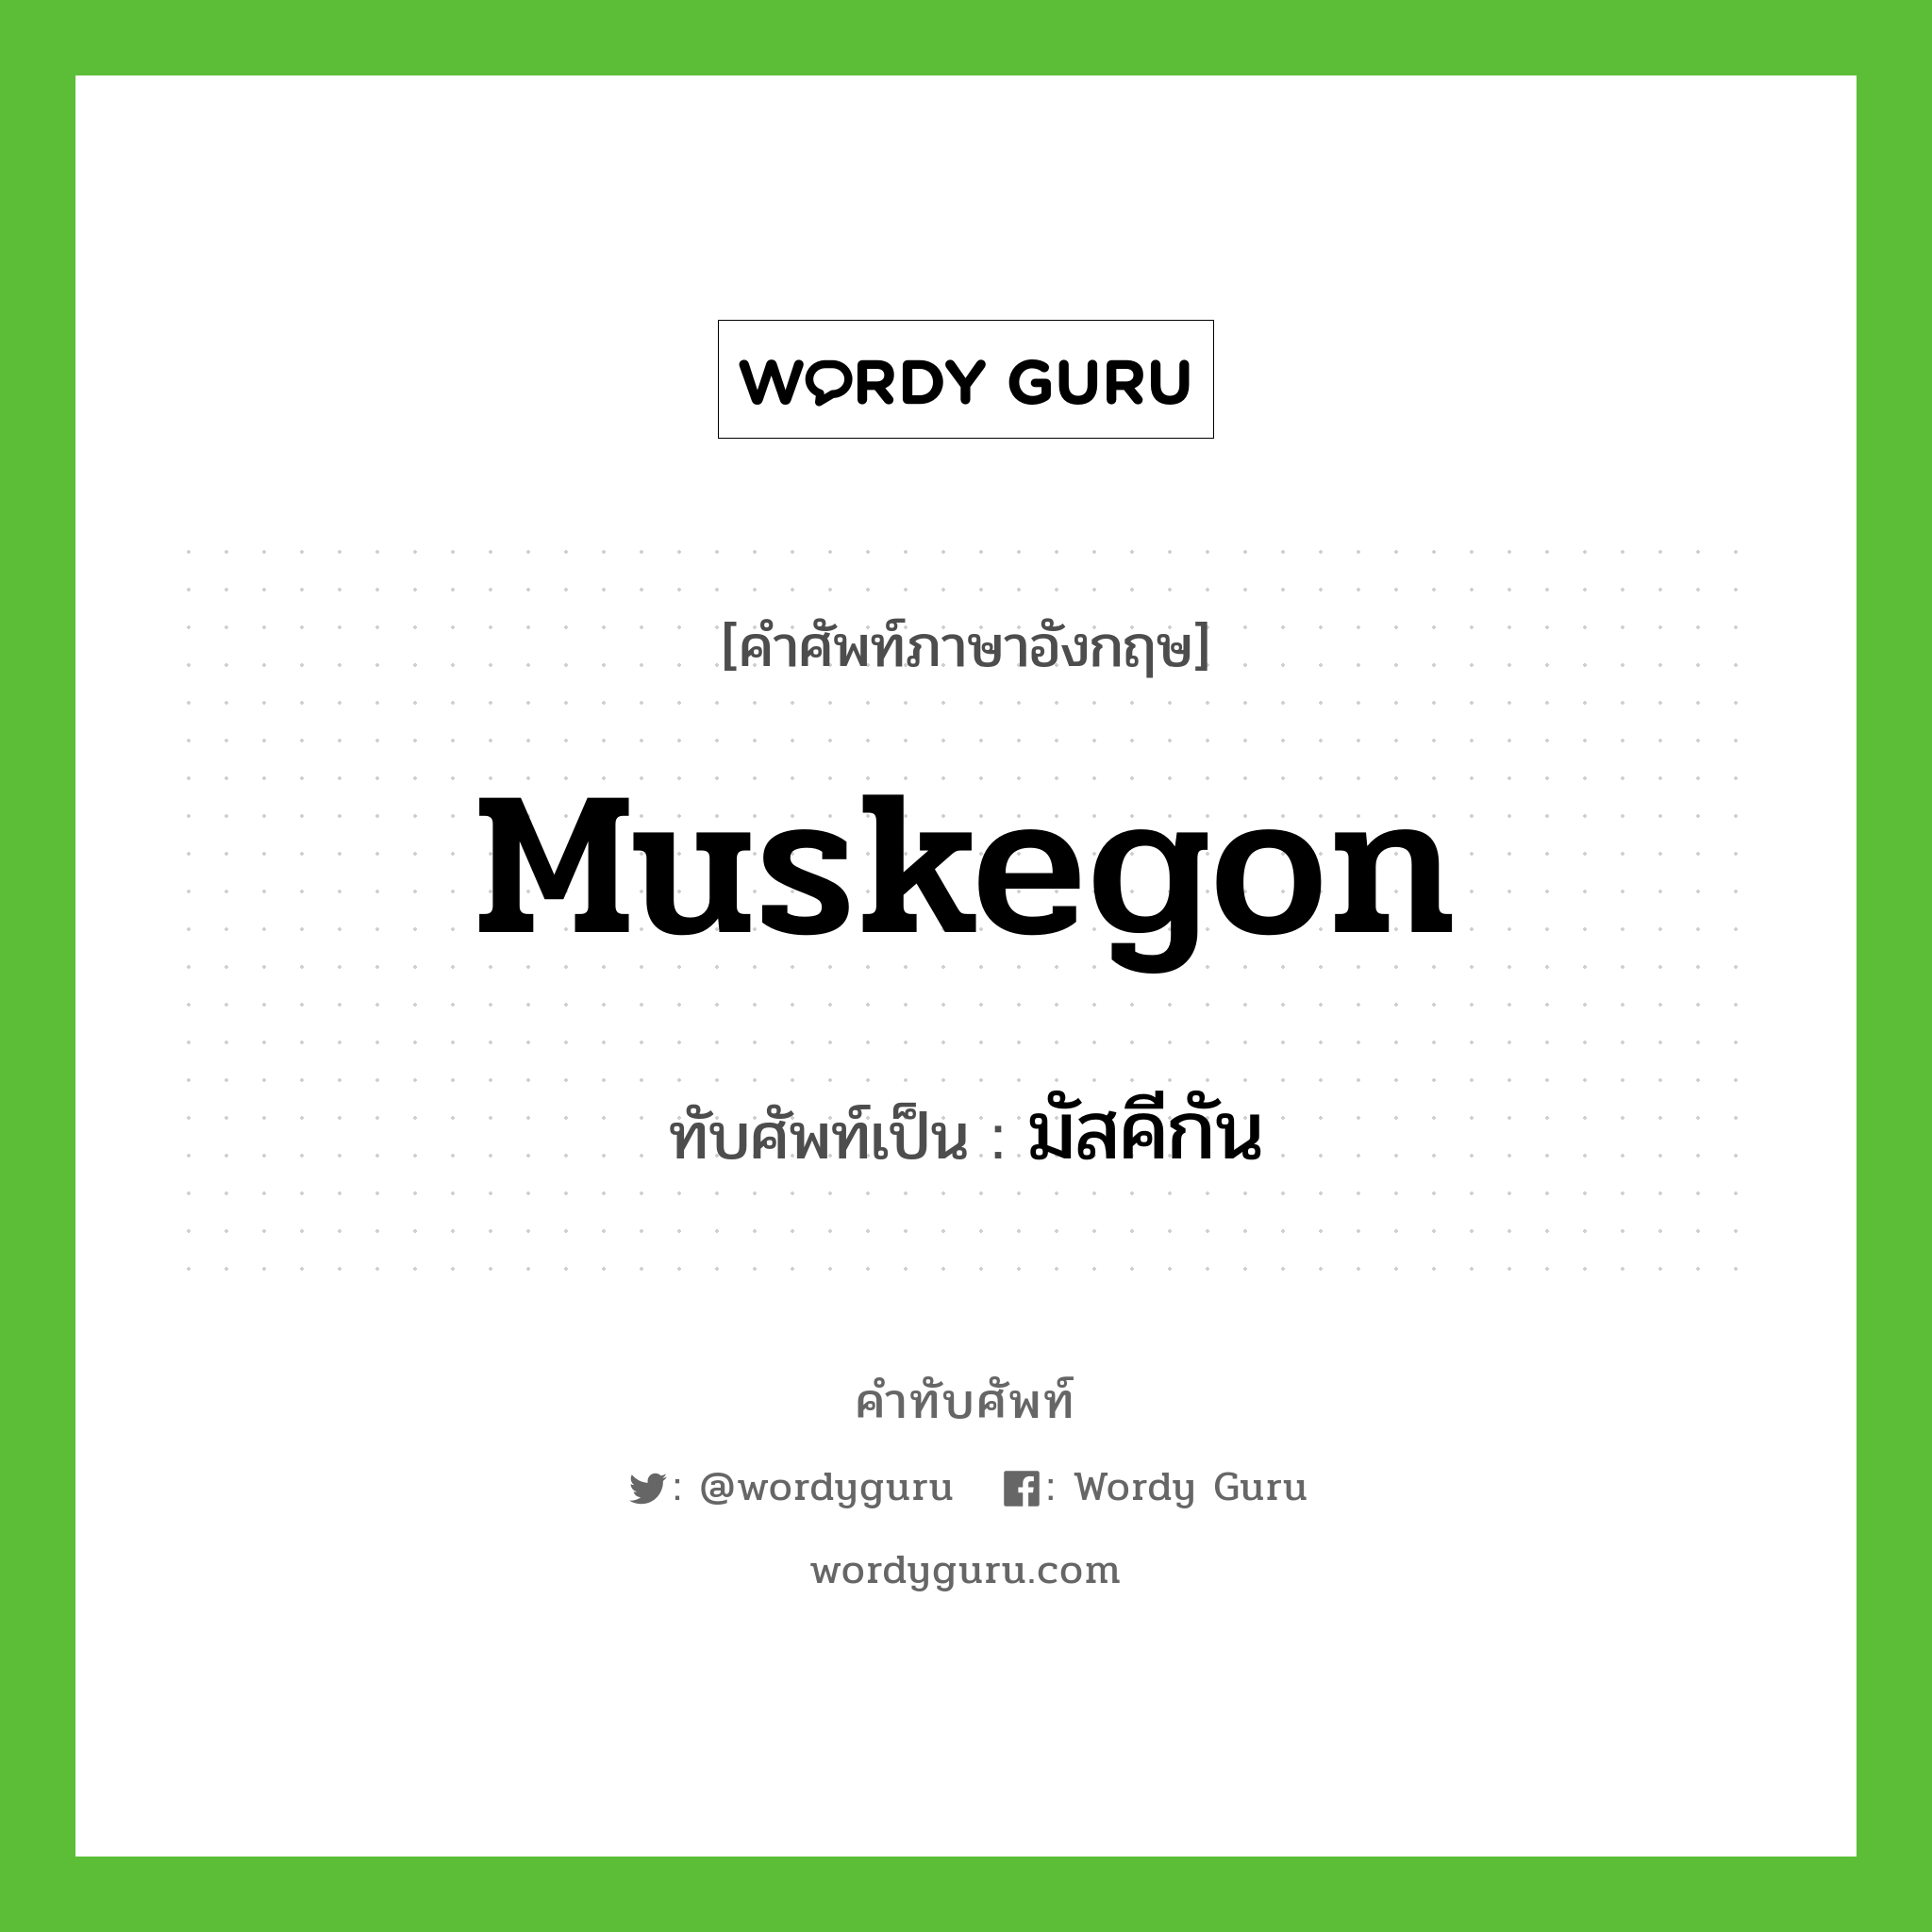 Muskegon เขียนเป็นคำไทยว่าอะไร?, คำศัพท์ภาษาอังกฤษ Muskegon ทับศัพท์เป็น มัสคีกัน